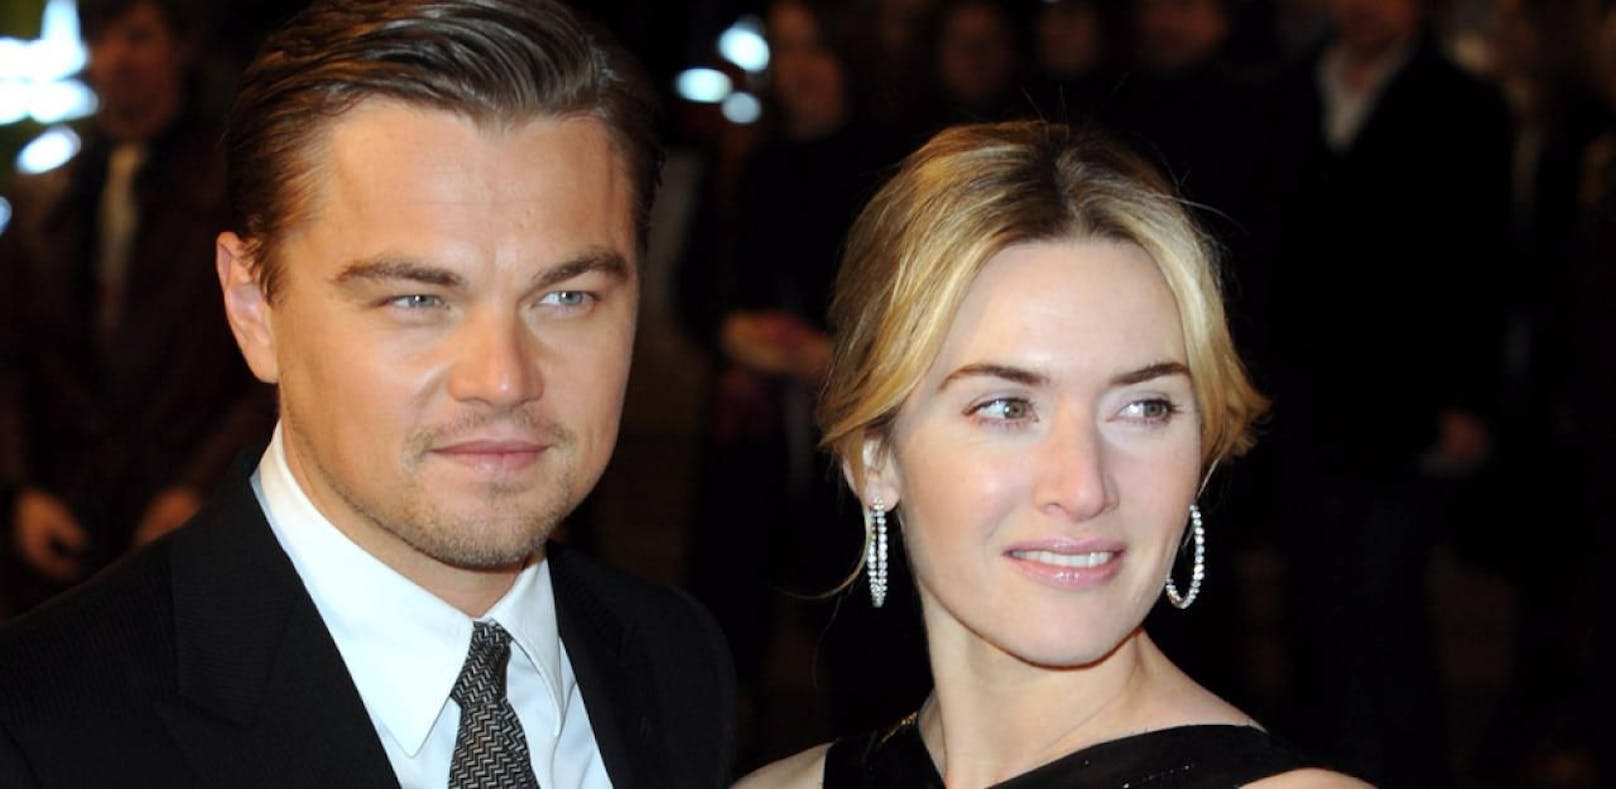 Schauspieler Leonardo DiCaprio und Kate Winslet bei der Premiere von - Revolutionary Road - in London.